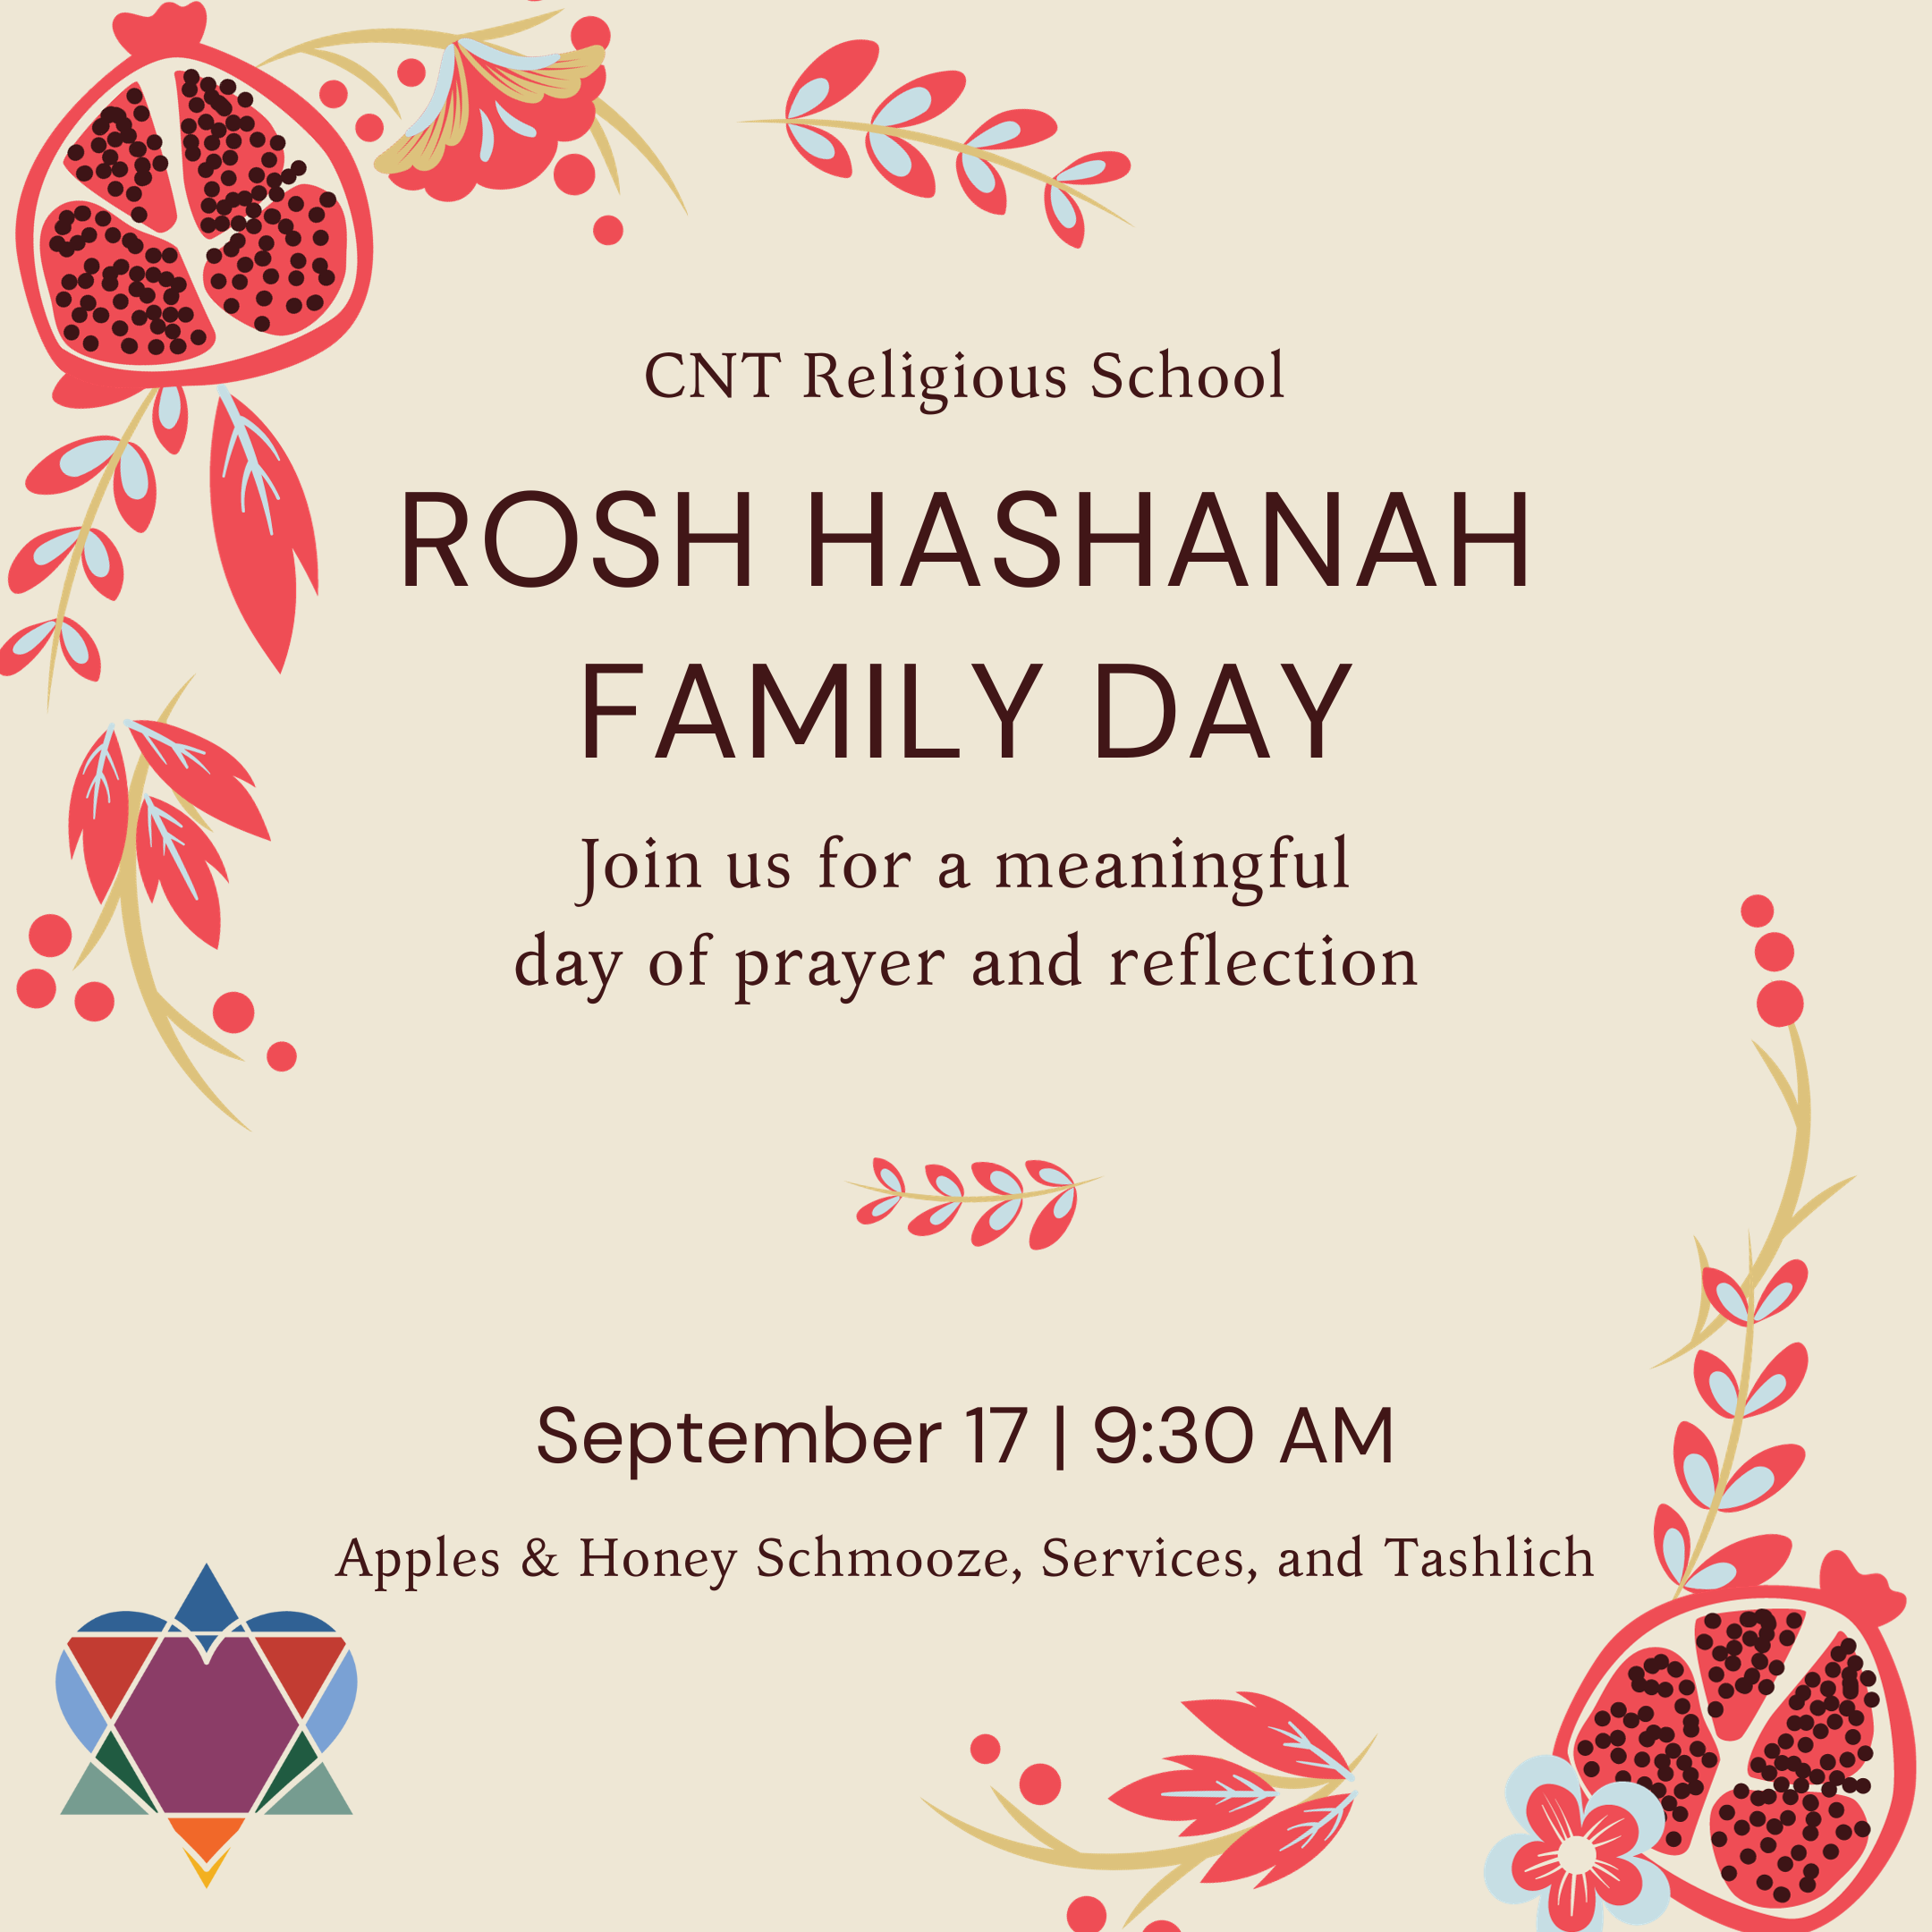 ROSH HASHANAH FAMILY DAY